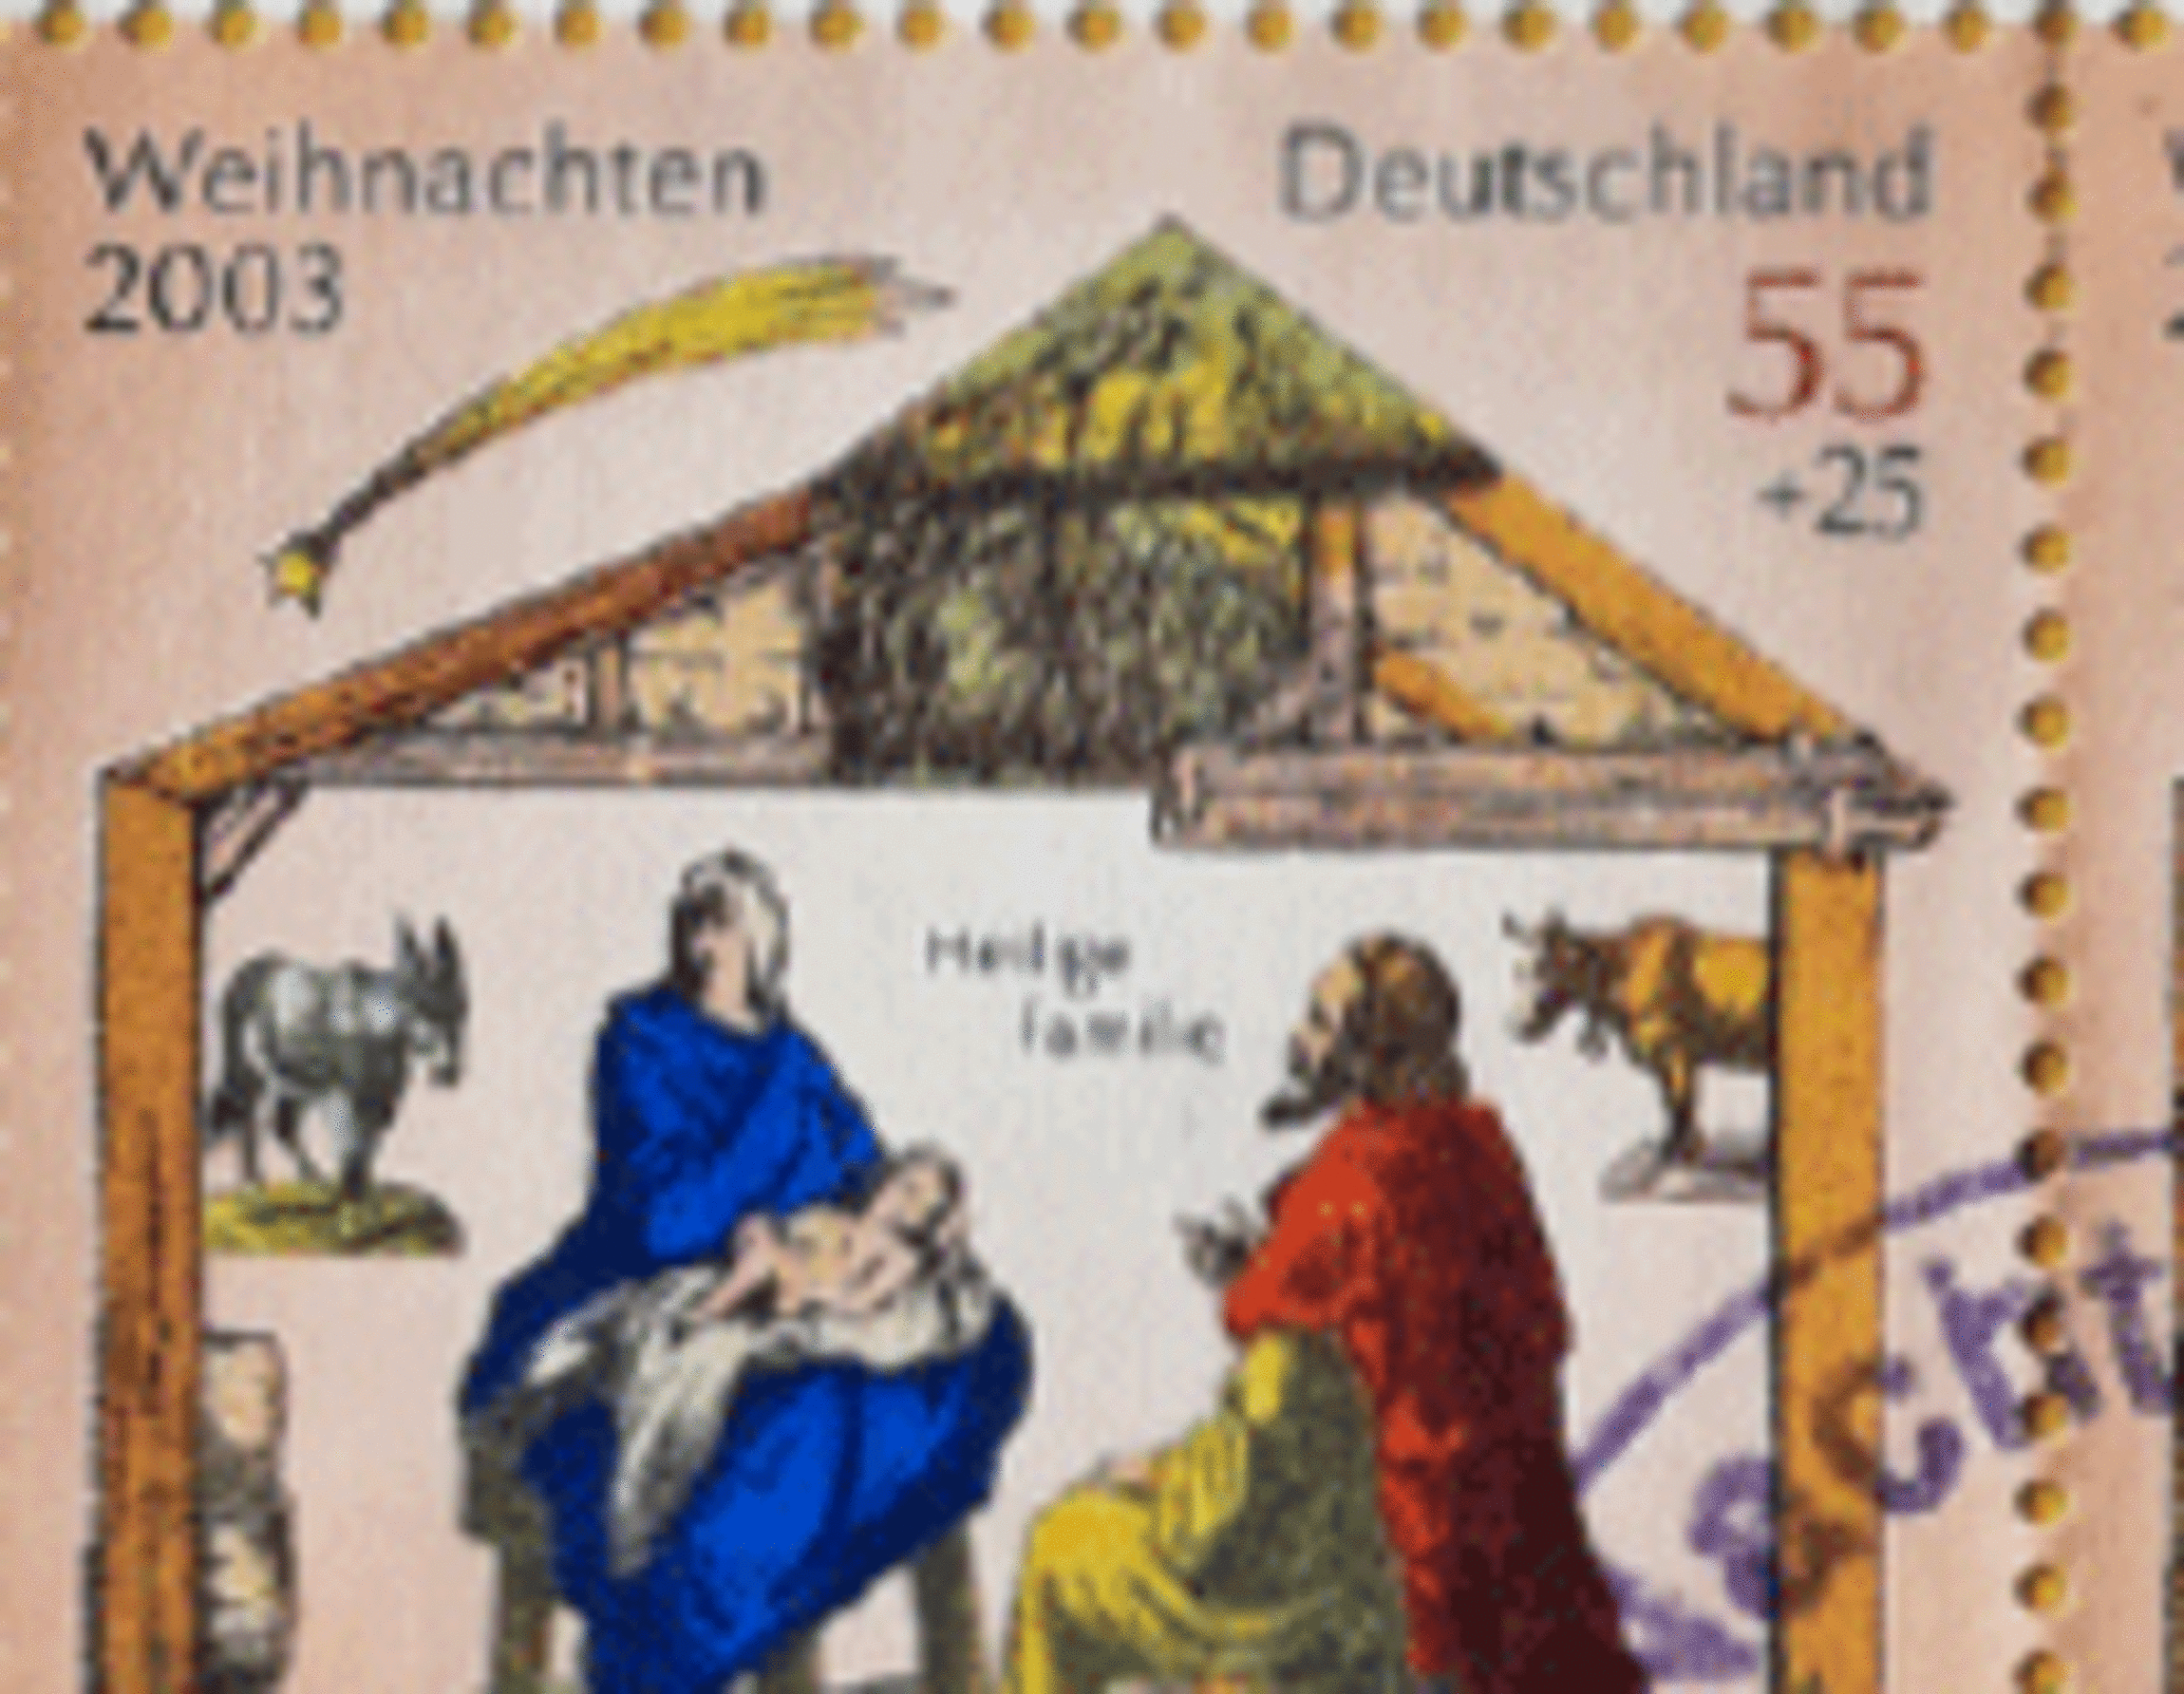 Briefmarke von 2003